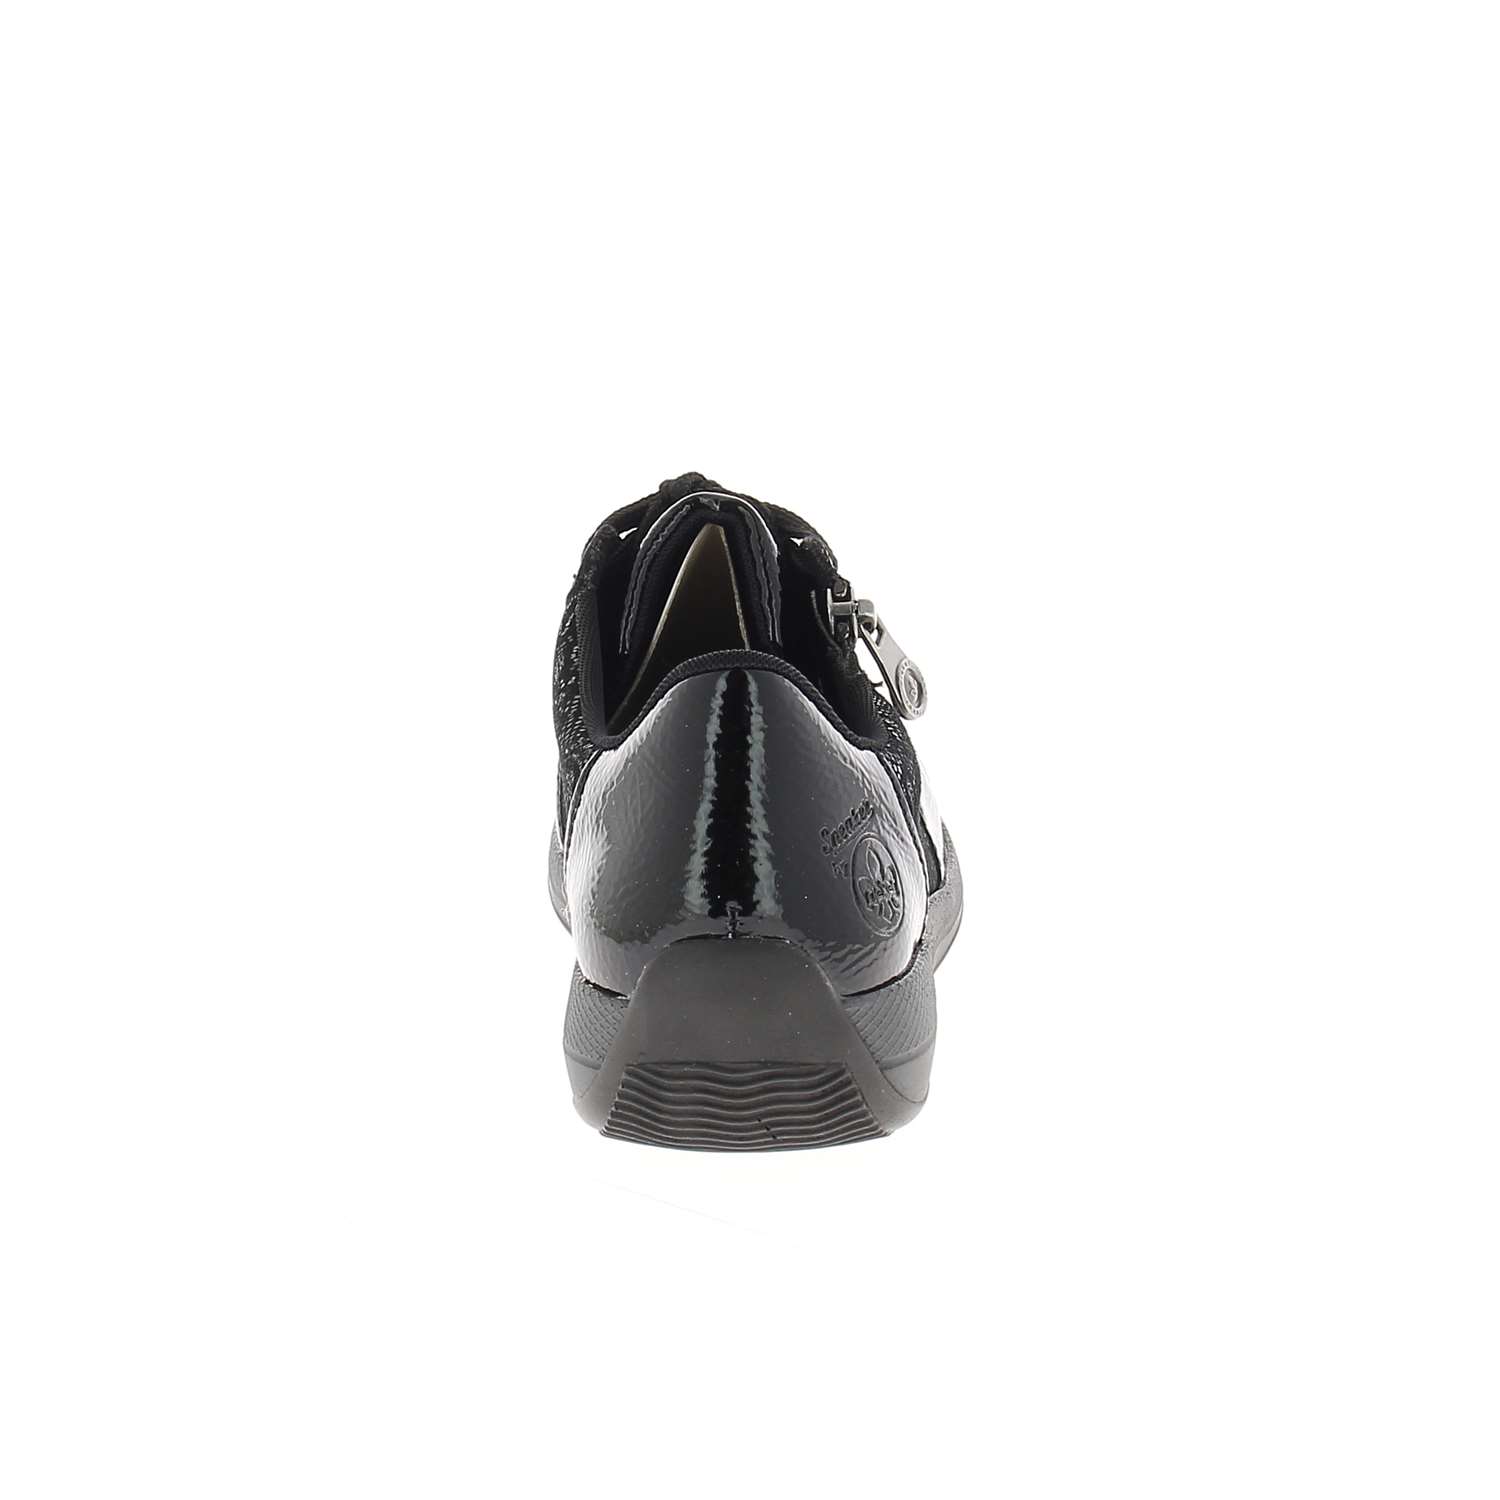 04 - RIMOISE - RIEKER - Chaussures à lacets - Cuir verni